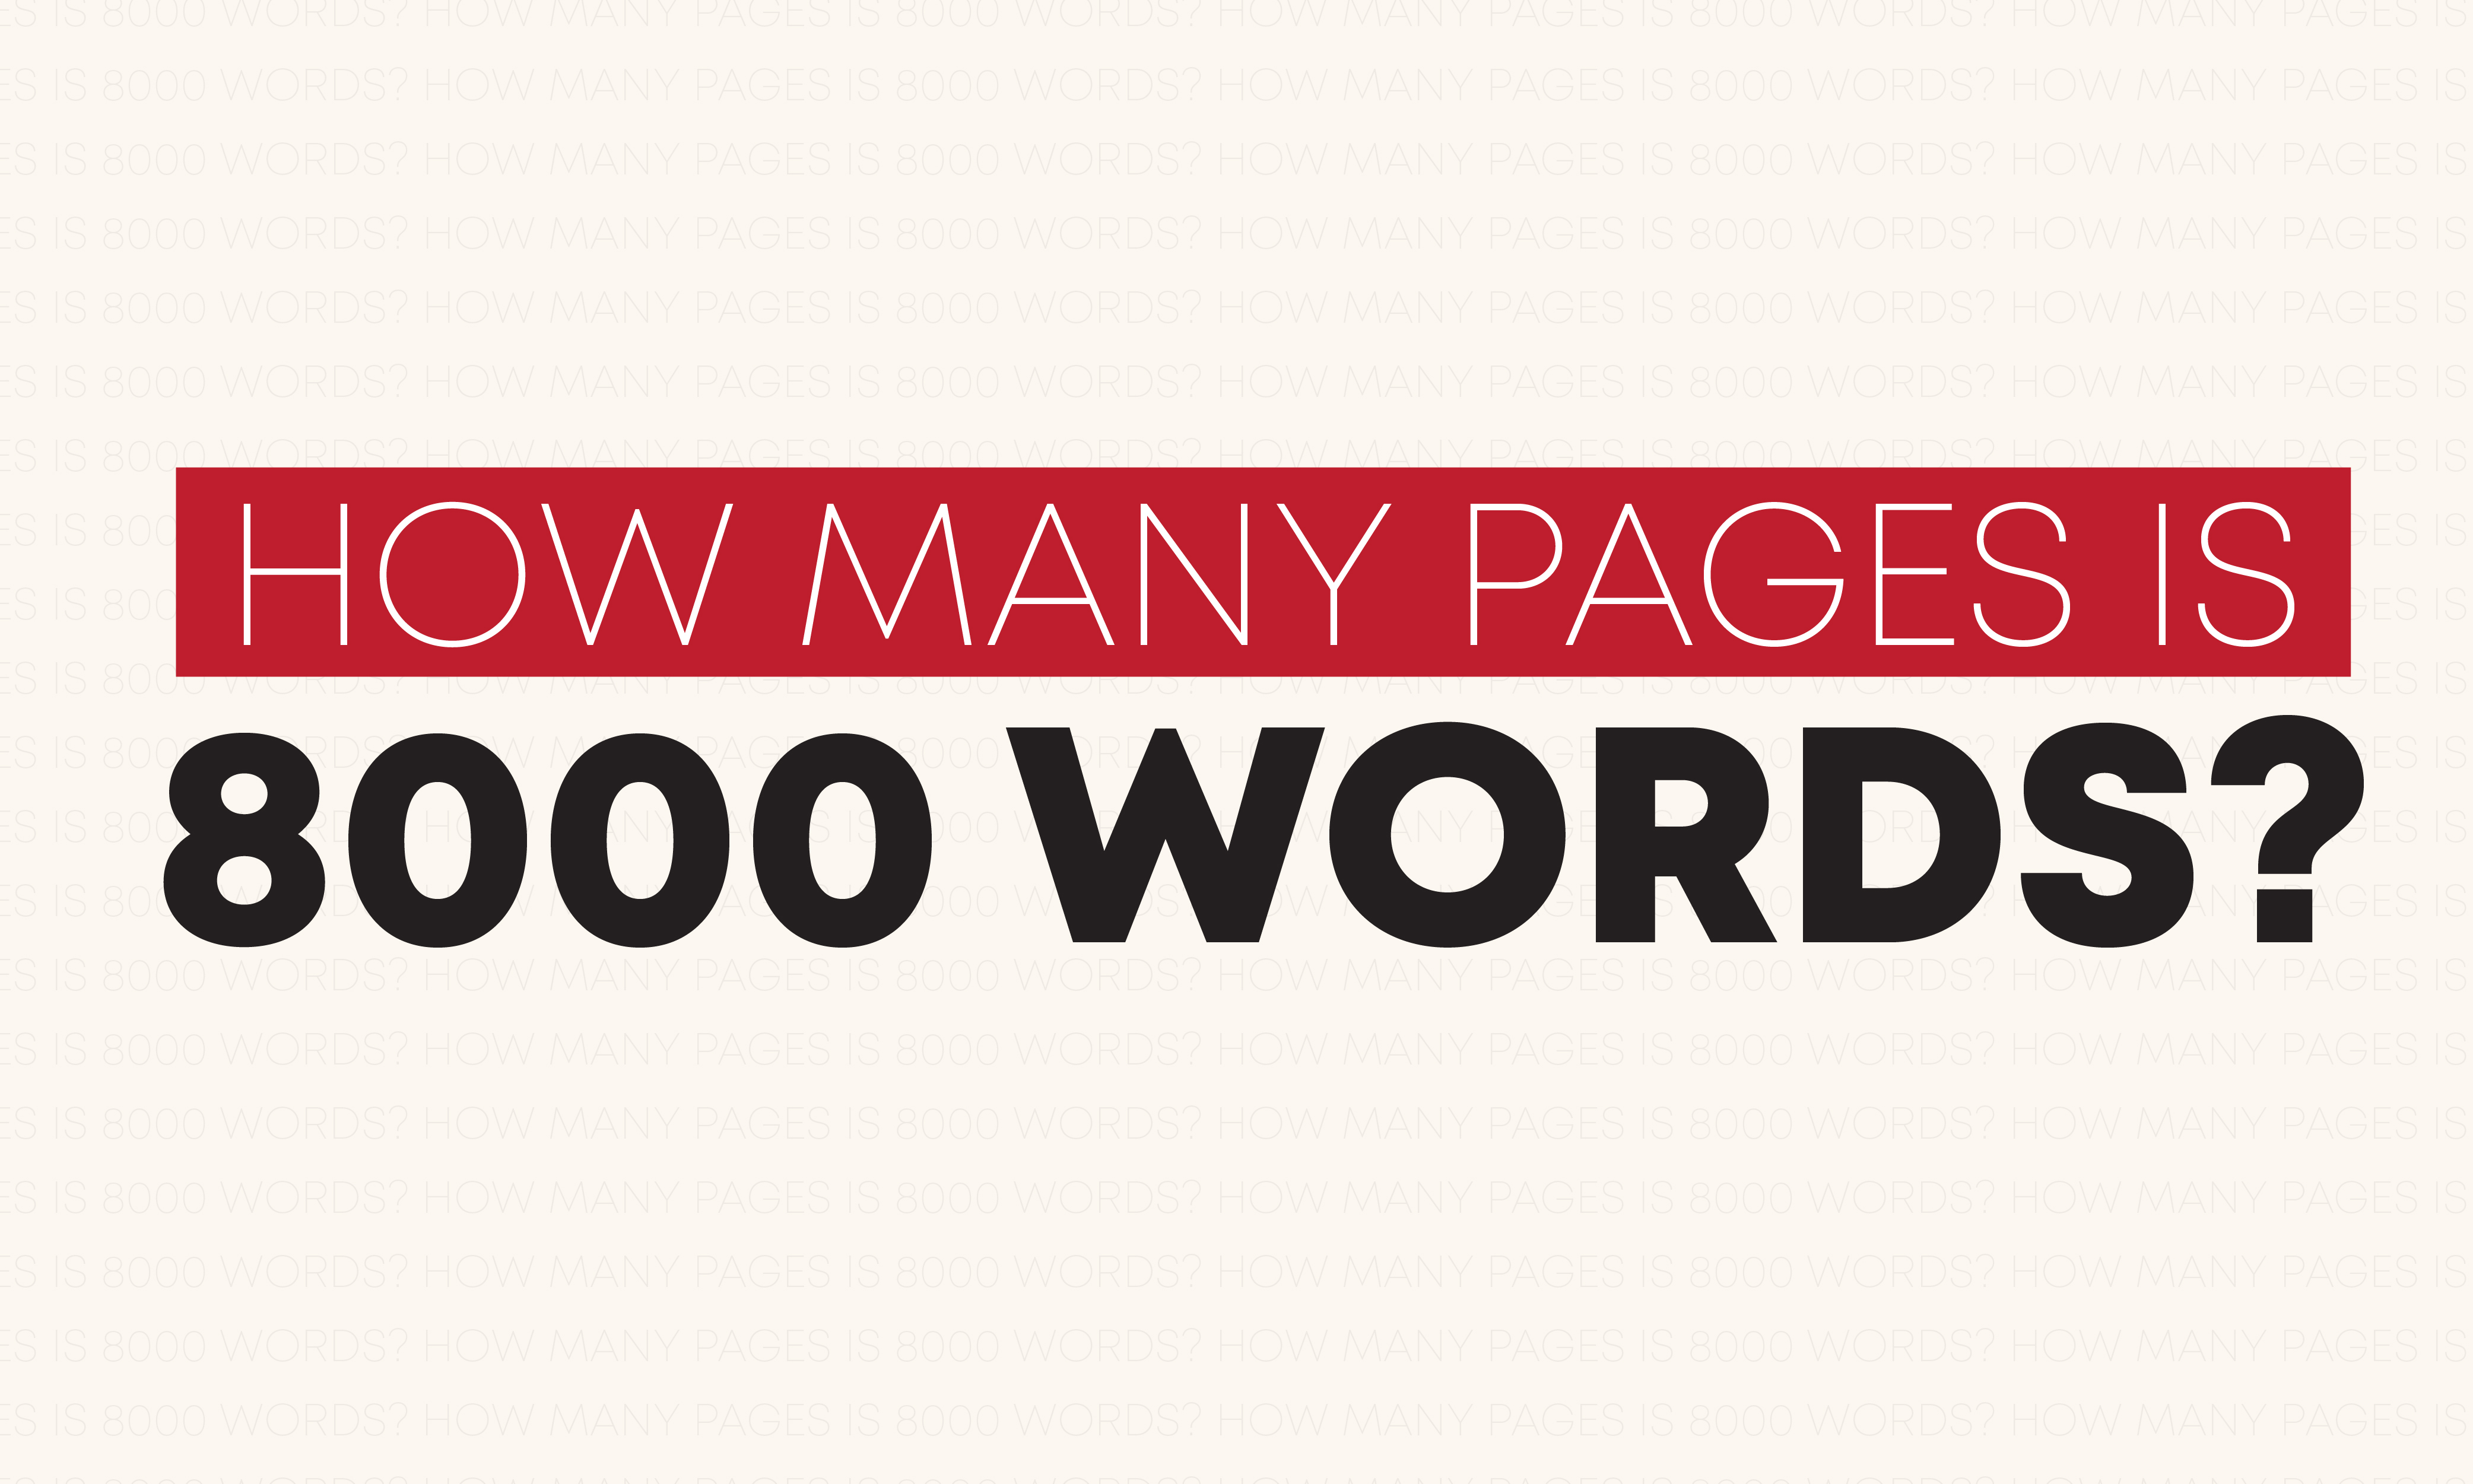 How long is an 8000 word speech?